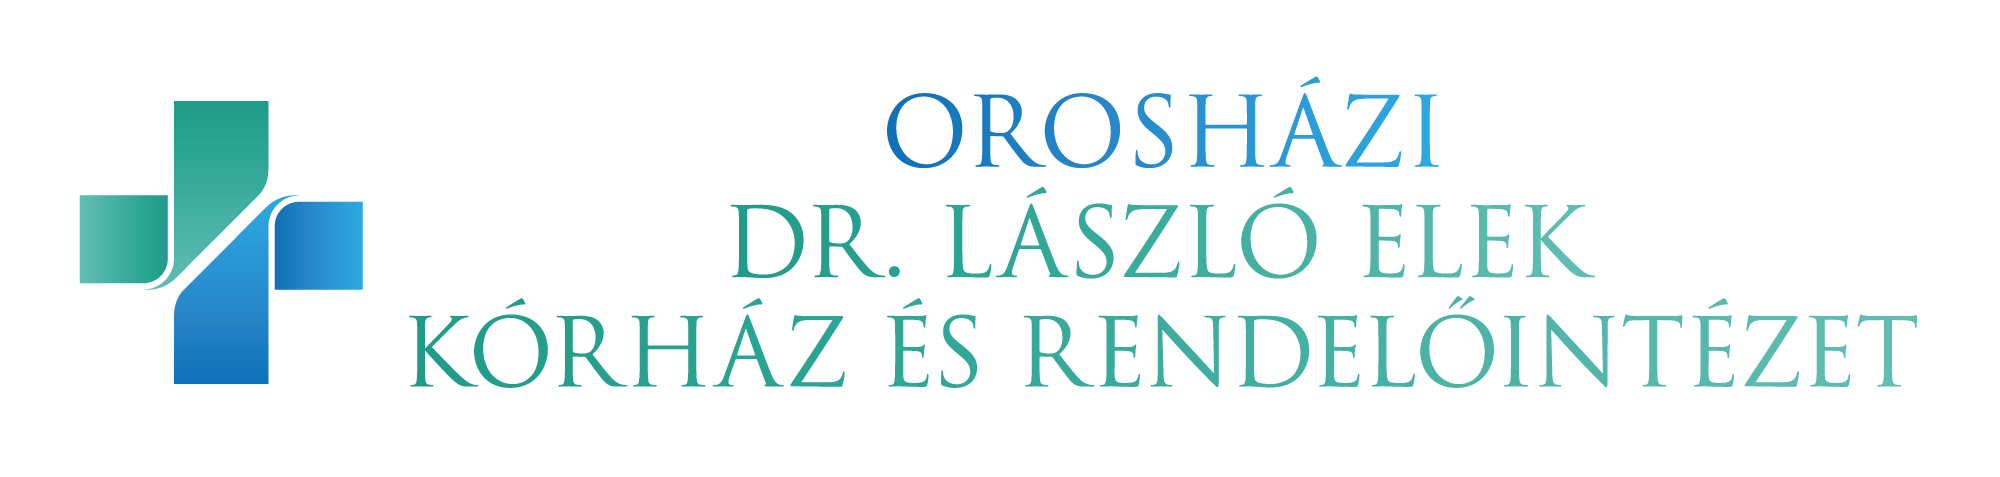 Orosházi Kórház